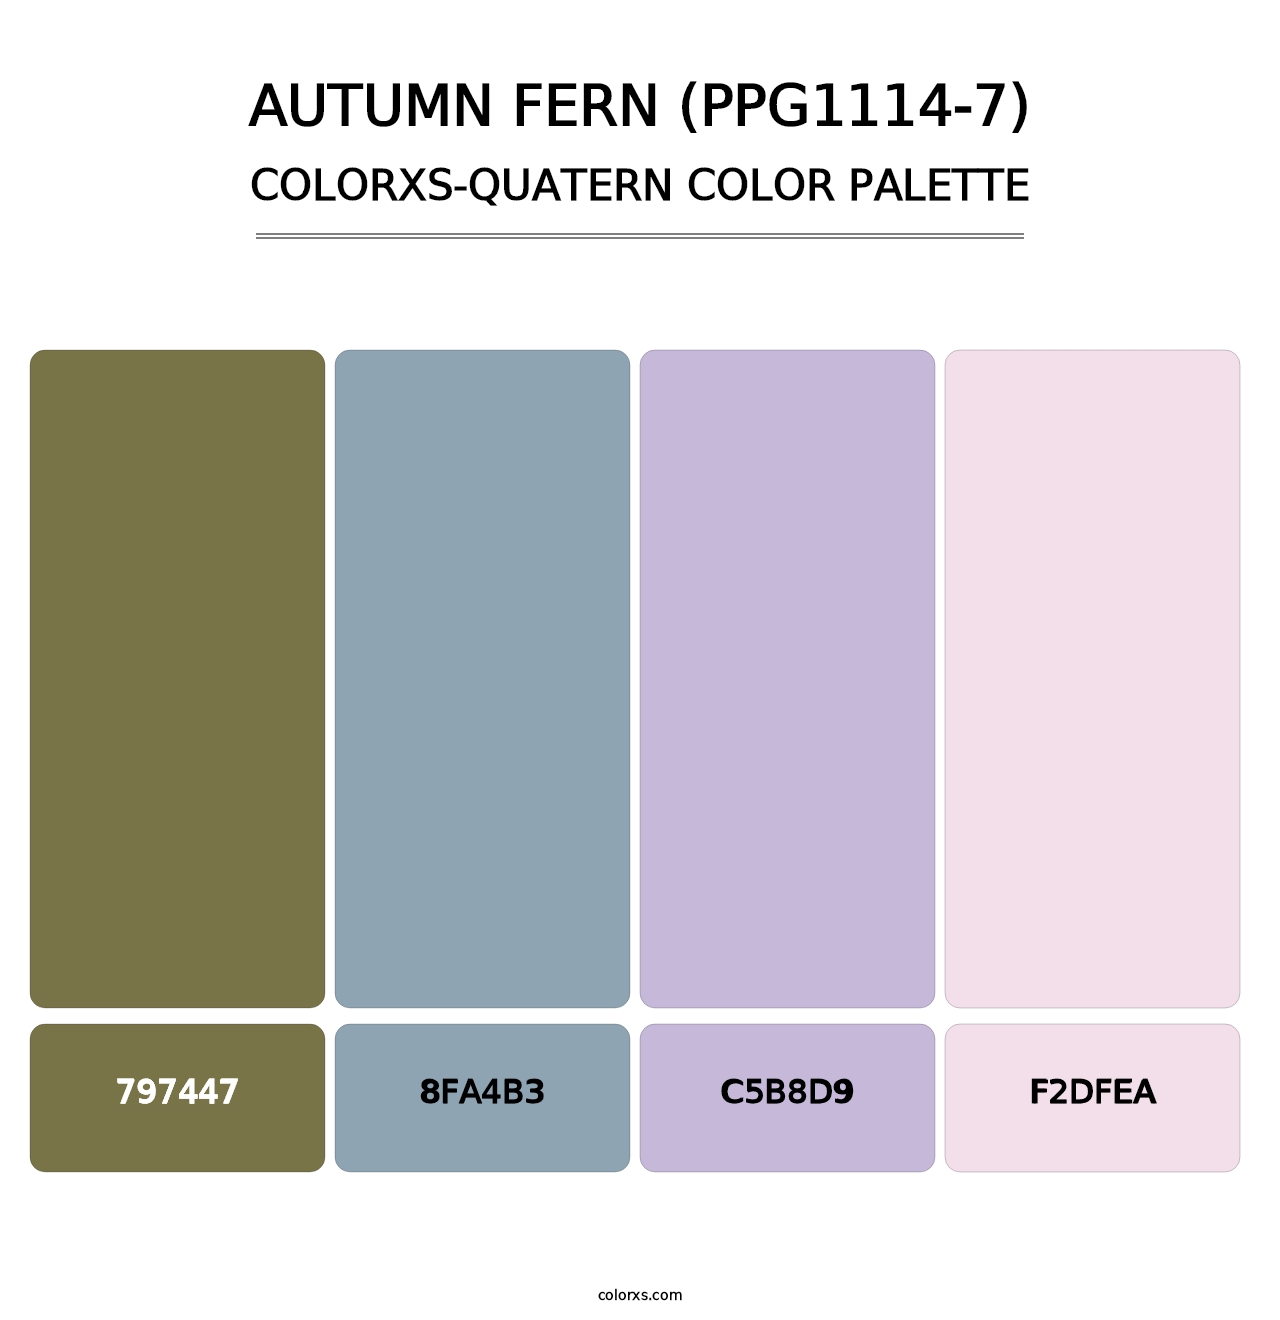 Autumn Fern (PPG1114-7) - Colorxs Quatern Palette